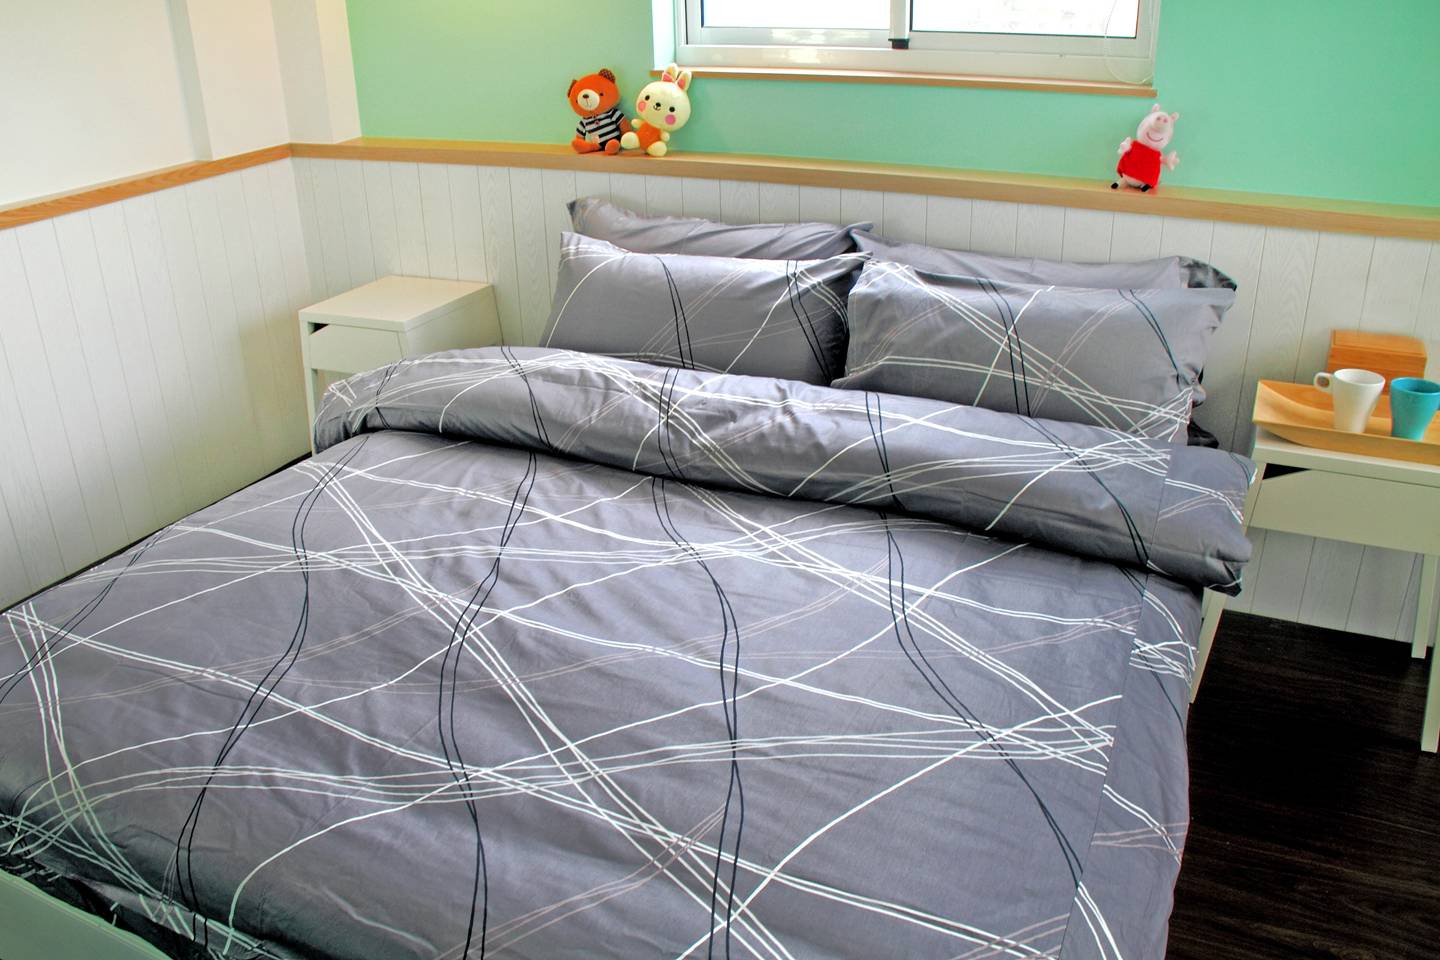 床包兩用被組 / 加大雙人 印花設計款 / 幾何線條 100%精梳棉  加大雙人床包兩用被組